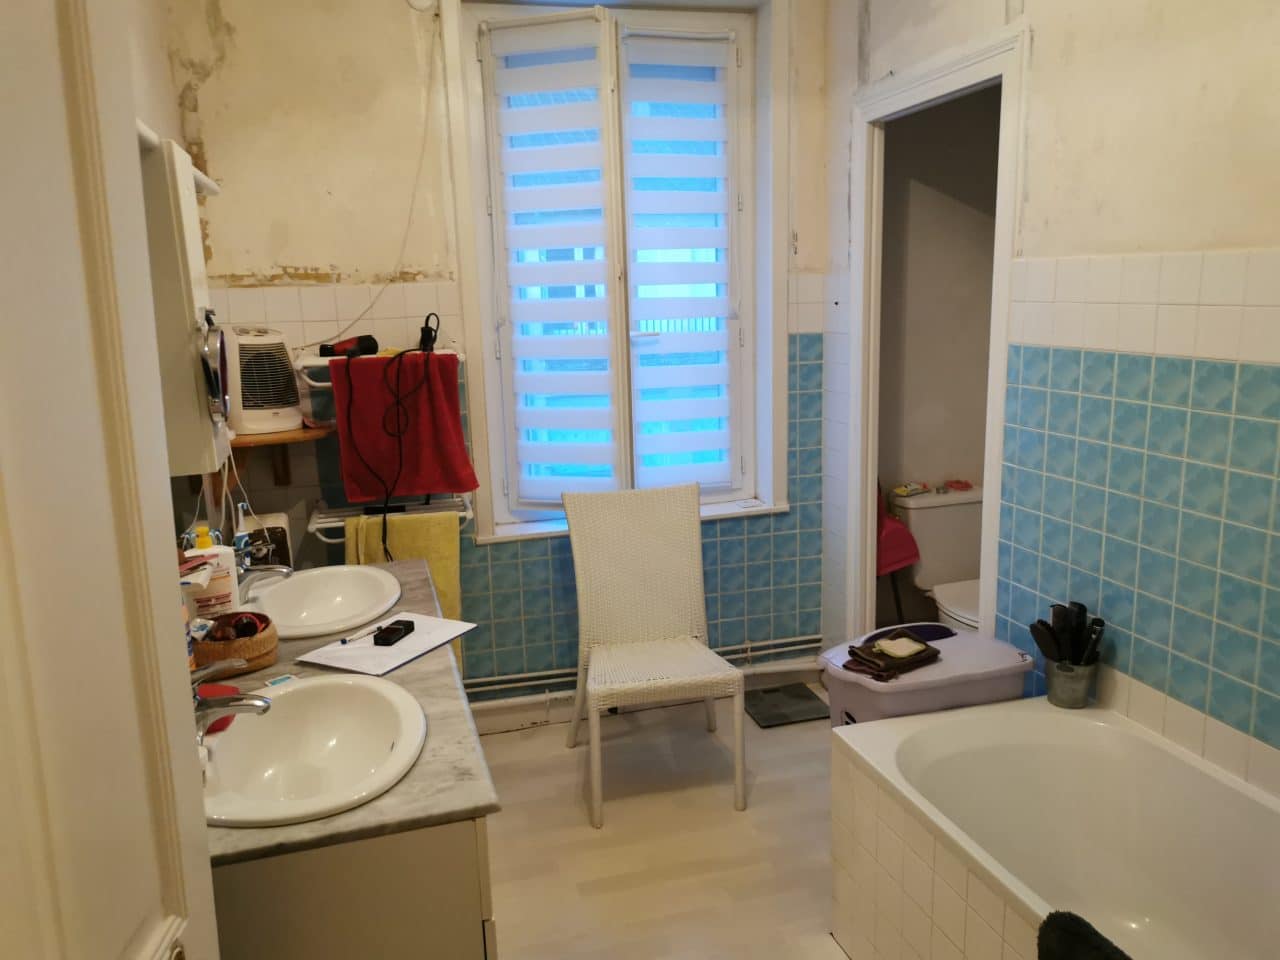 rénovation d'une salle de bain à Brive-la-Gaillarde - avant travaux de rénovation